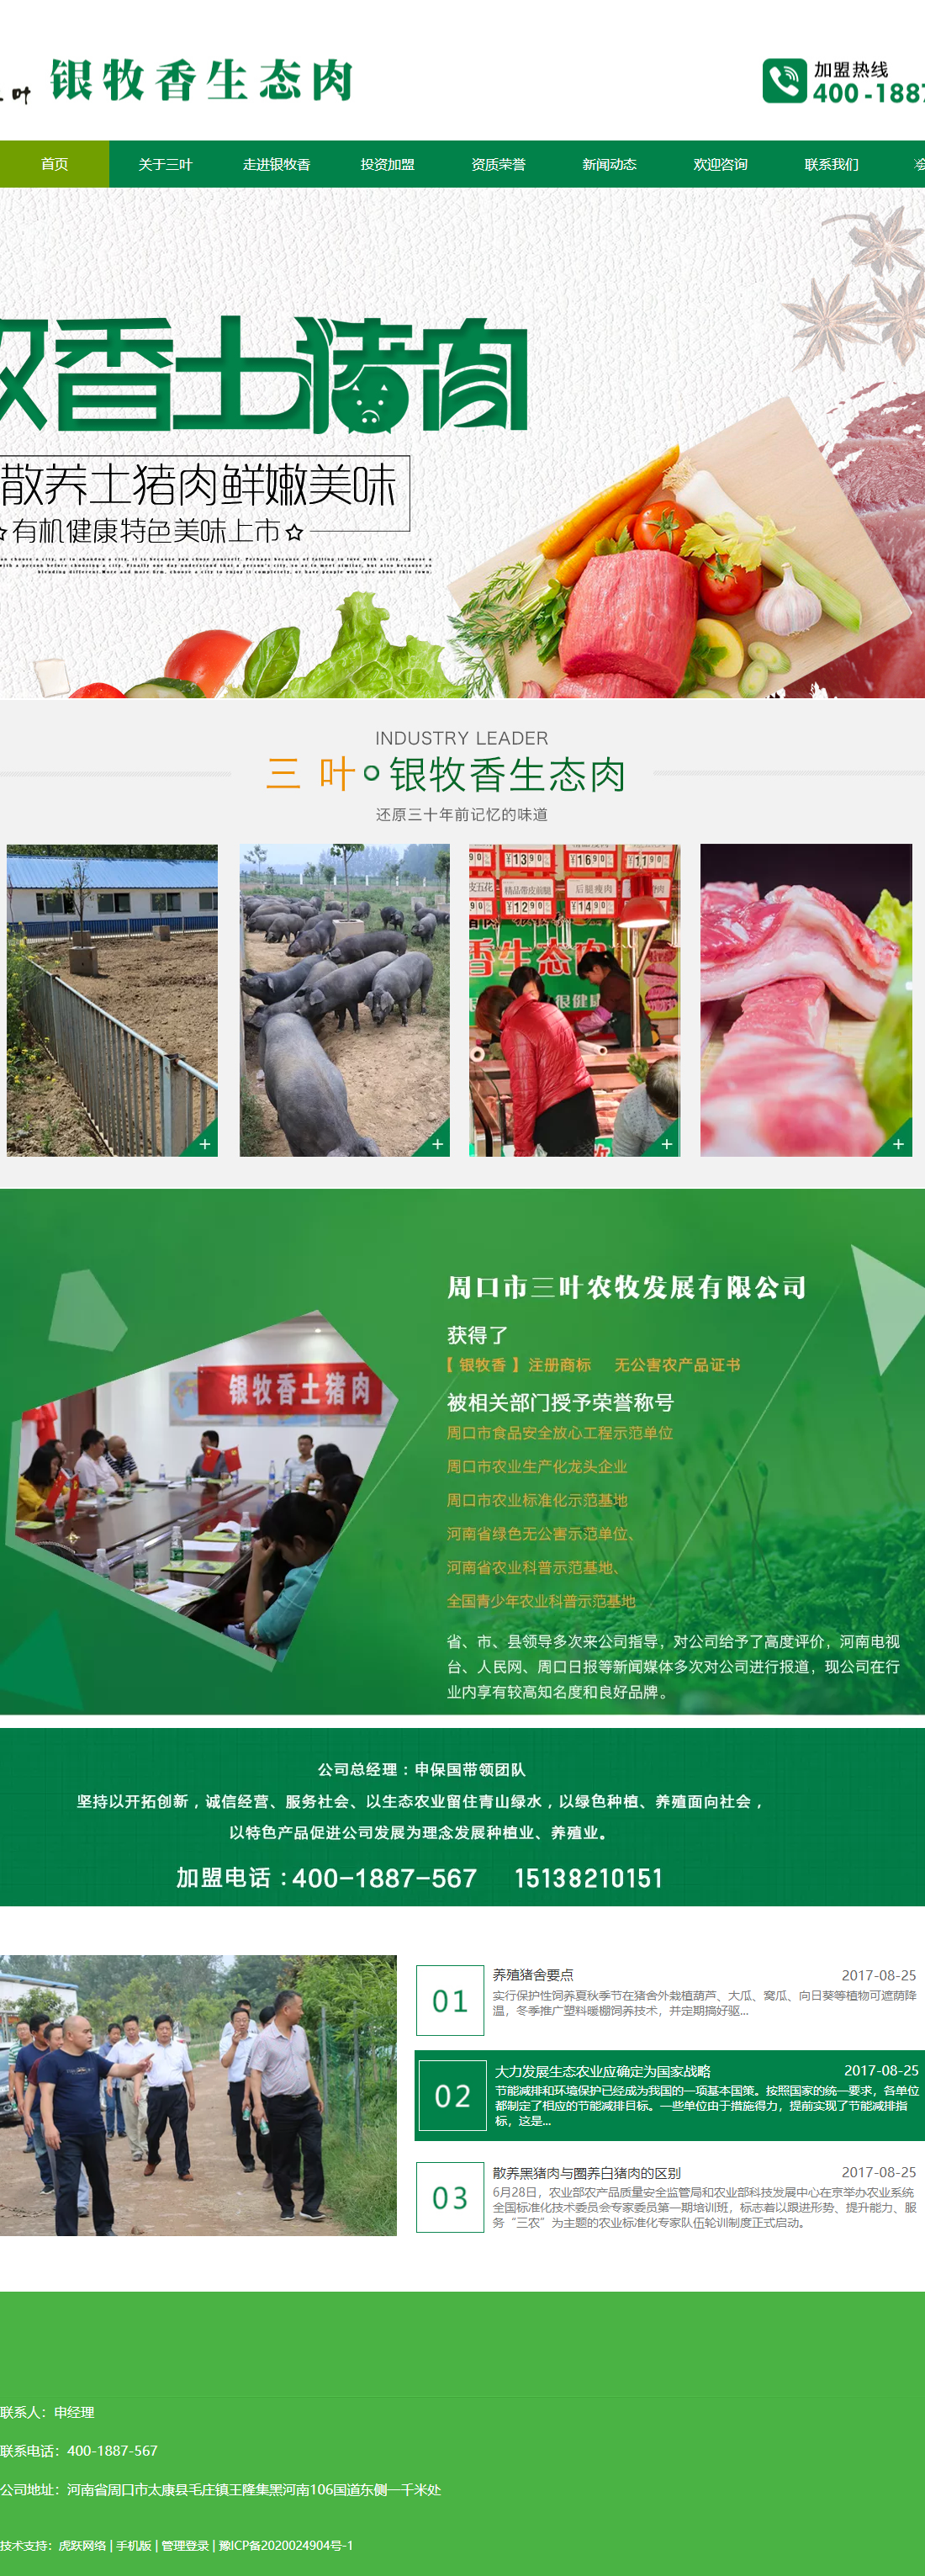 周口三叶农牧发展有限公司网站案例